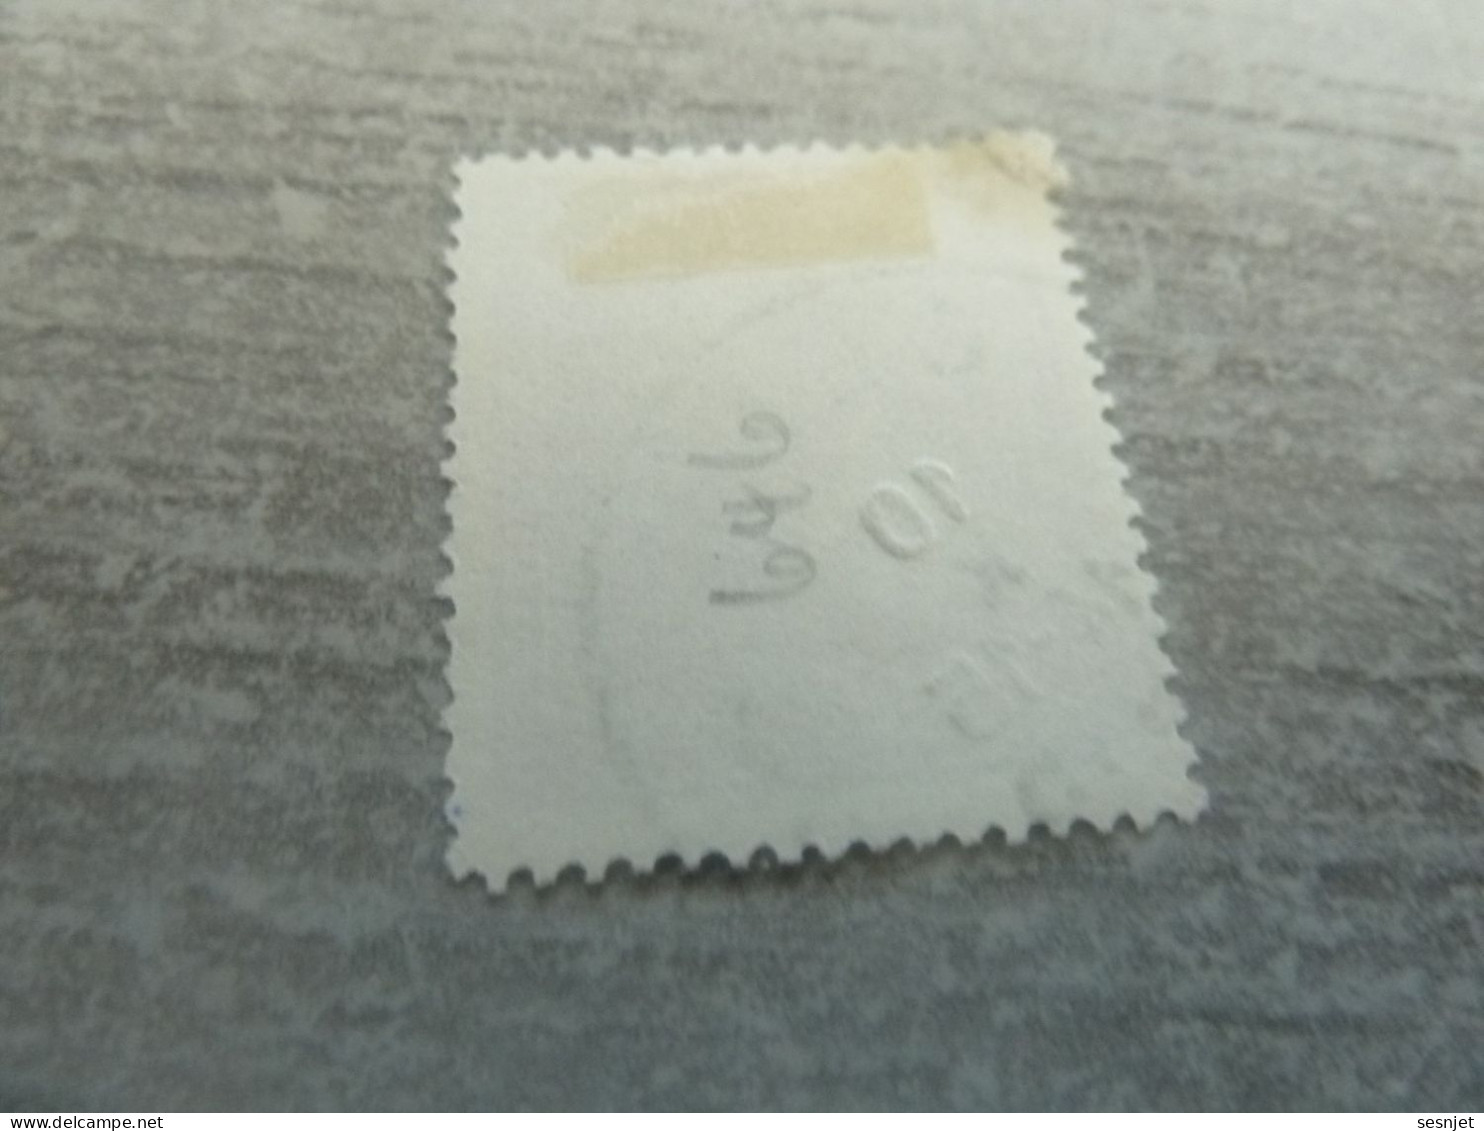 Belgique - Albert 1 - Val  1f.50 - Lilas - Oblitéré - Année 1945 - - Used Stamps